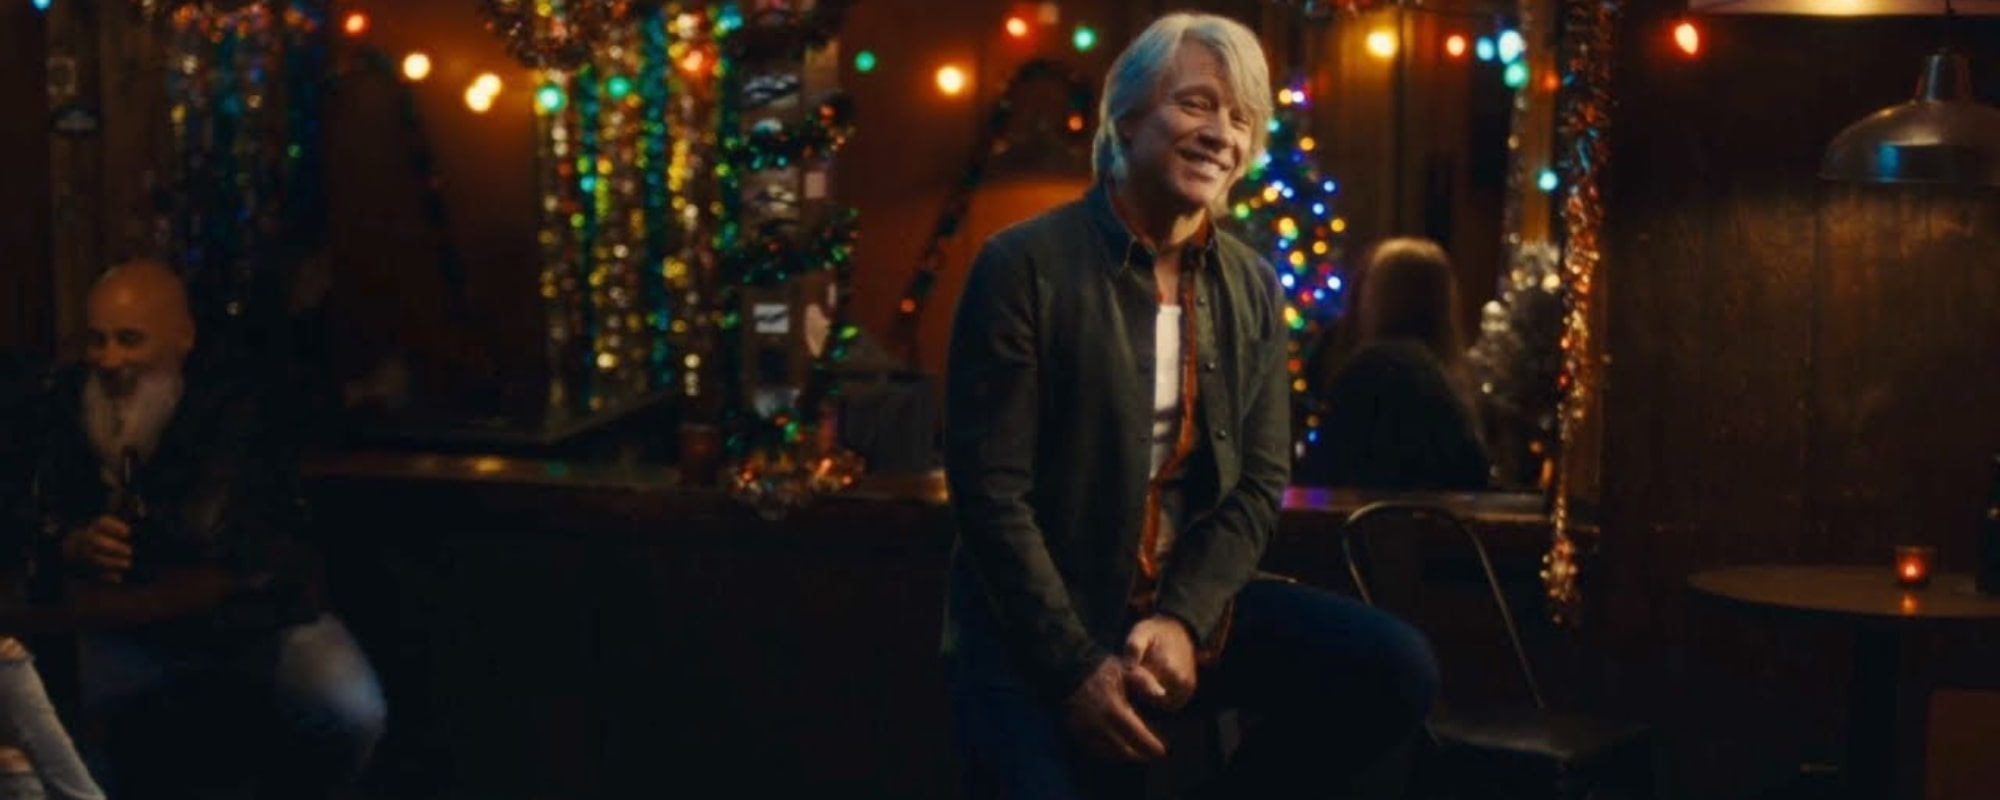 Bon Jovi capture l'ambiance festive de "Noël n'est pas Noël" avec un nouveau clip